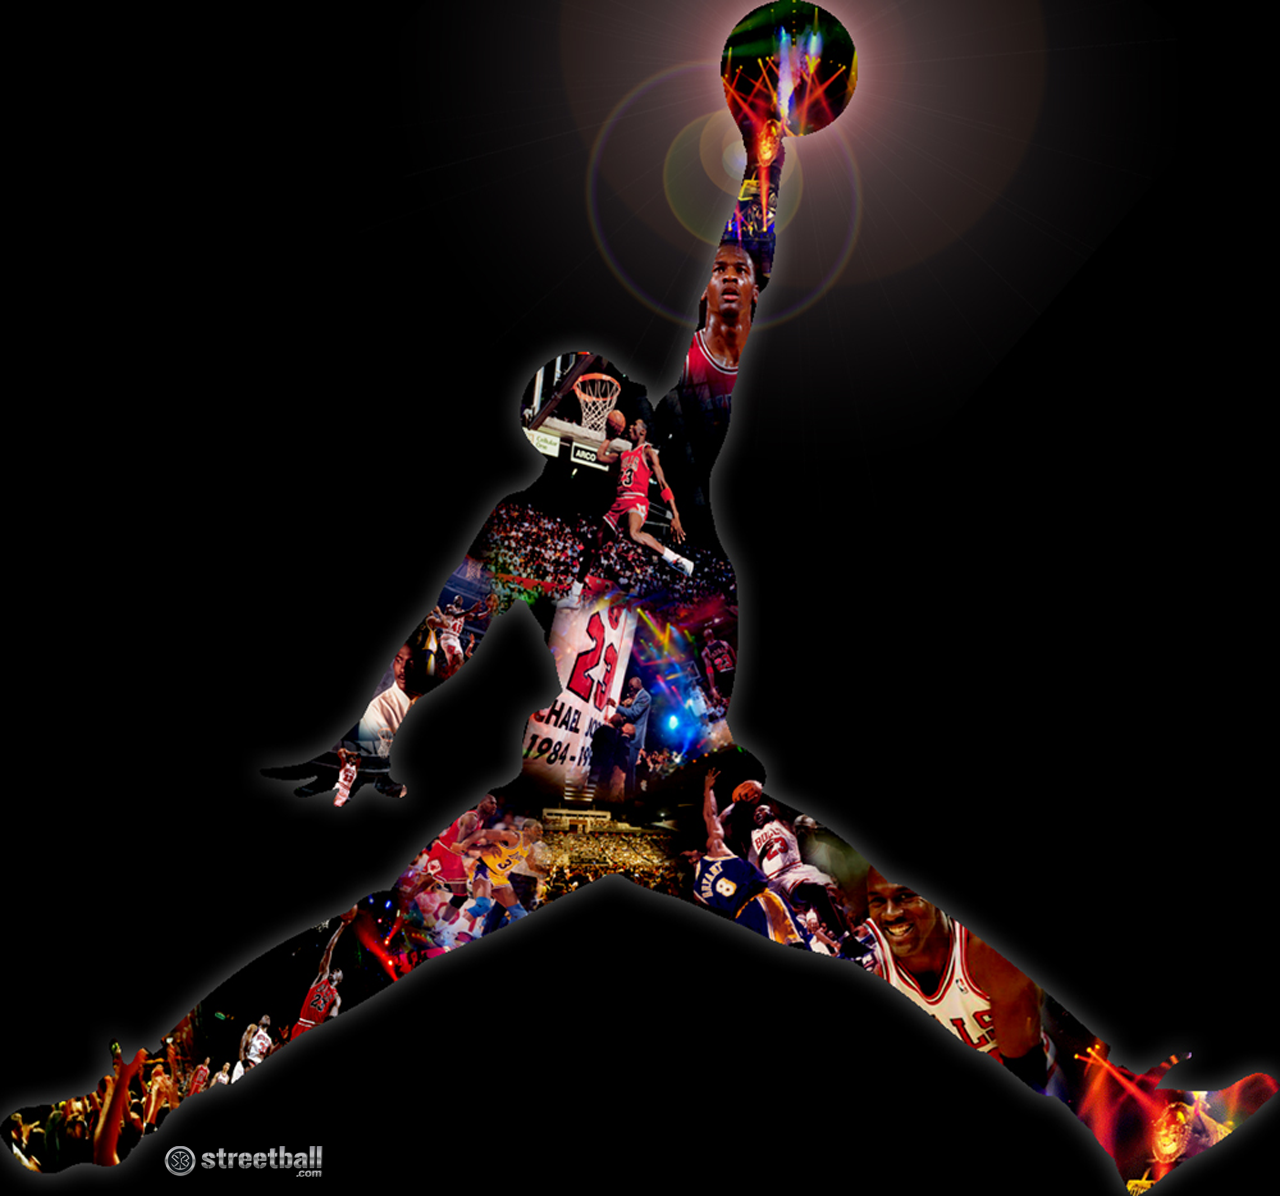 Michael Jordan Wallpaper HD And Pictures